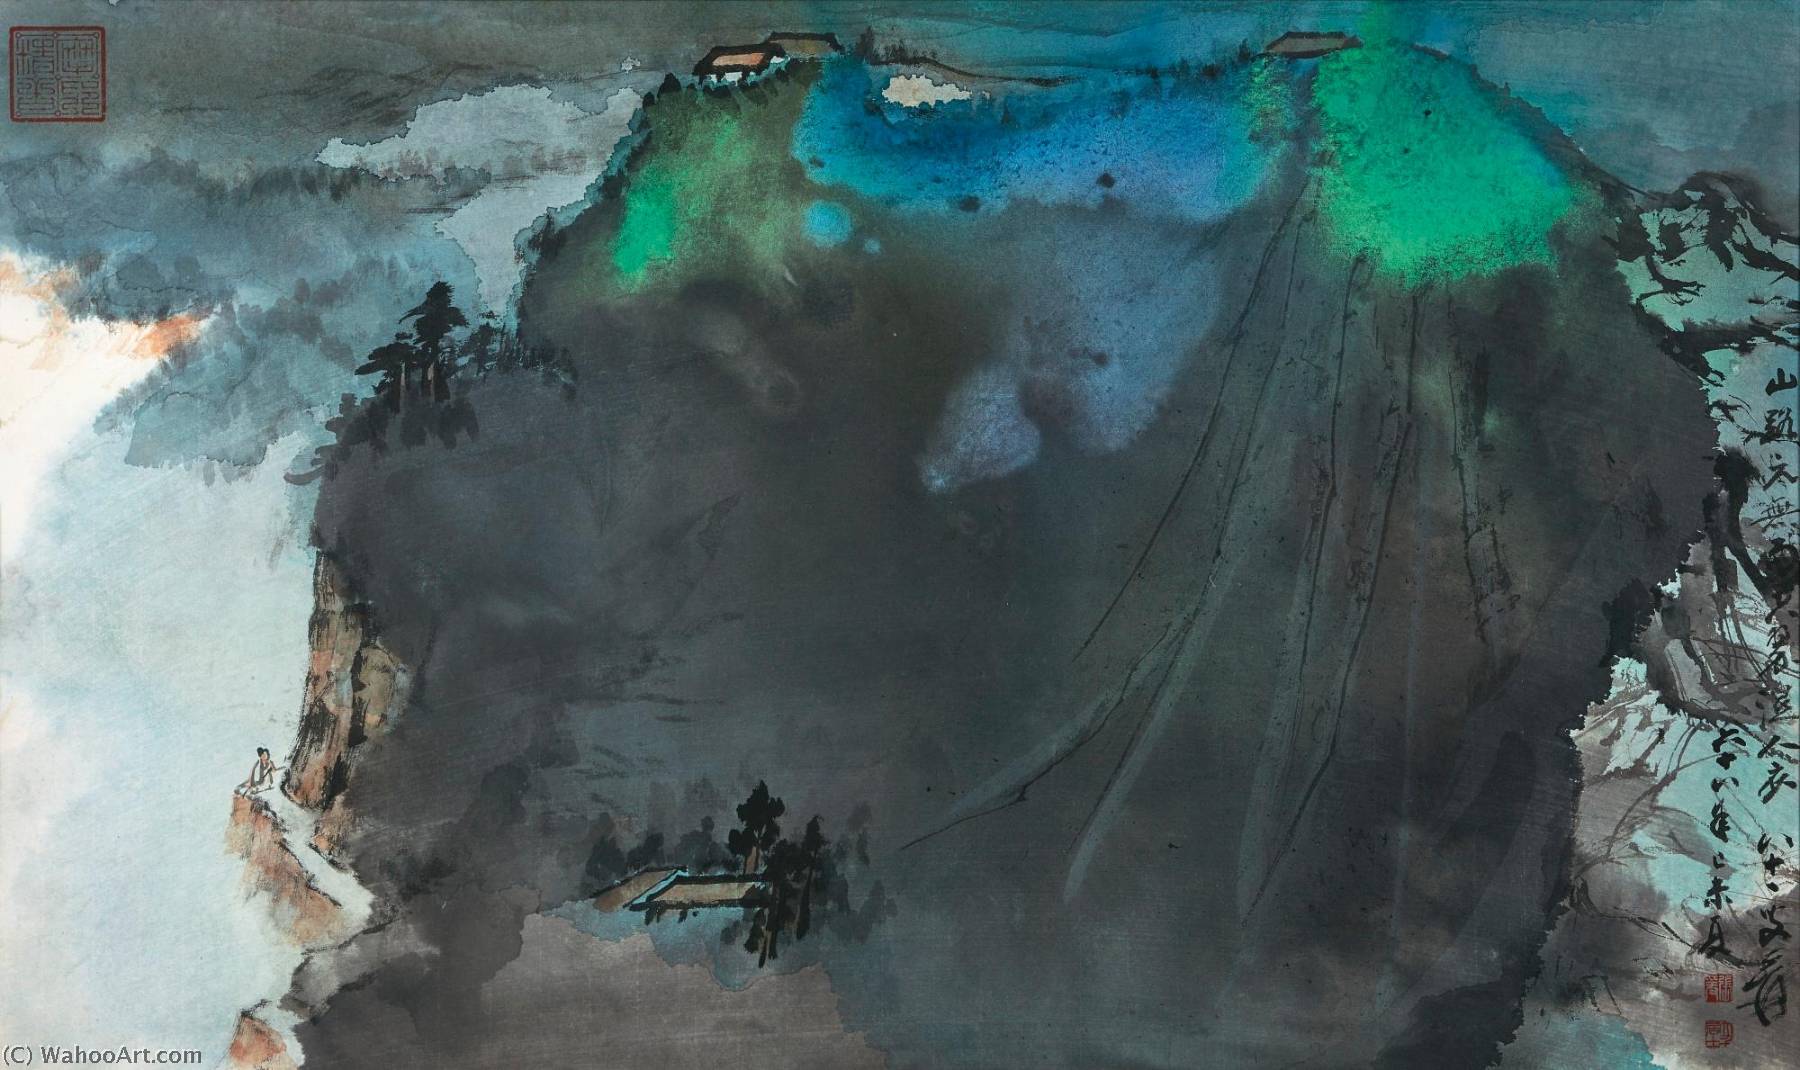 WikiOO.org - Encyclopedia of Fine Arts - Lukisan, Artwork Zhang Daqian - Summer Mountains in the Clouds